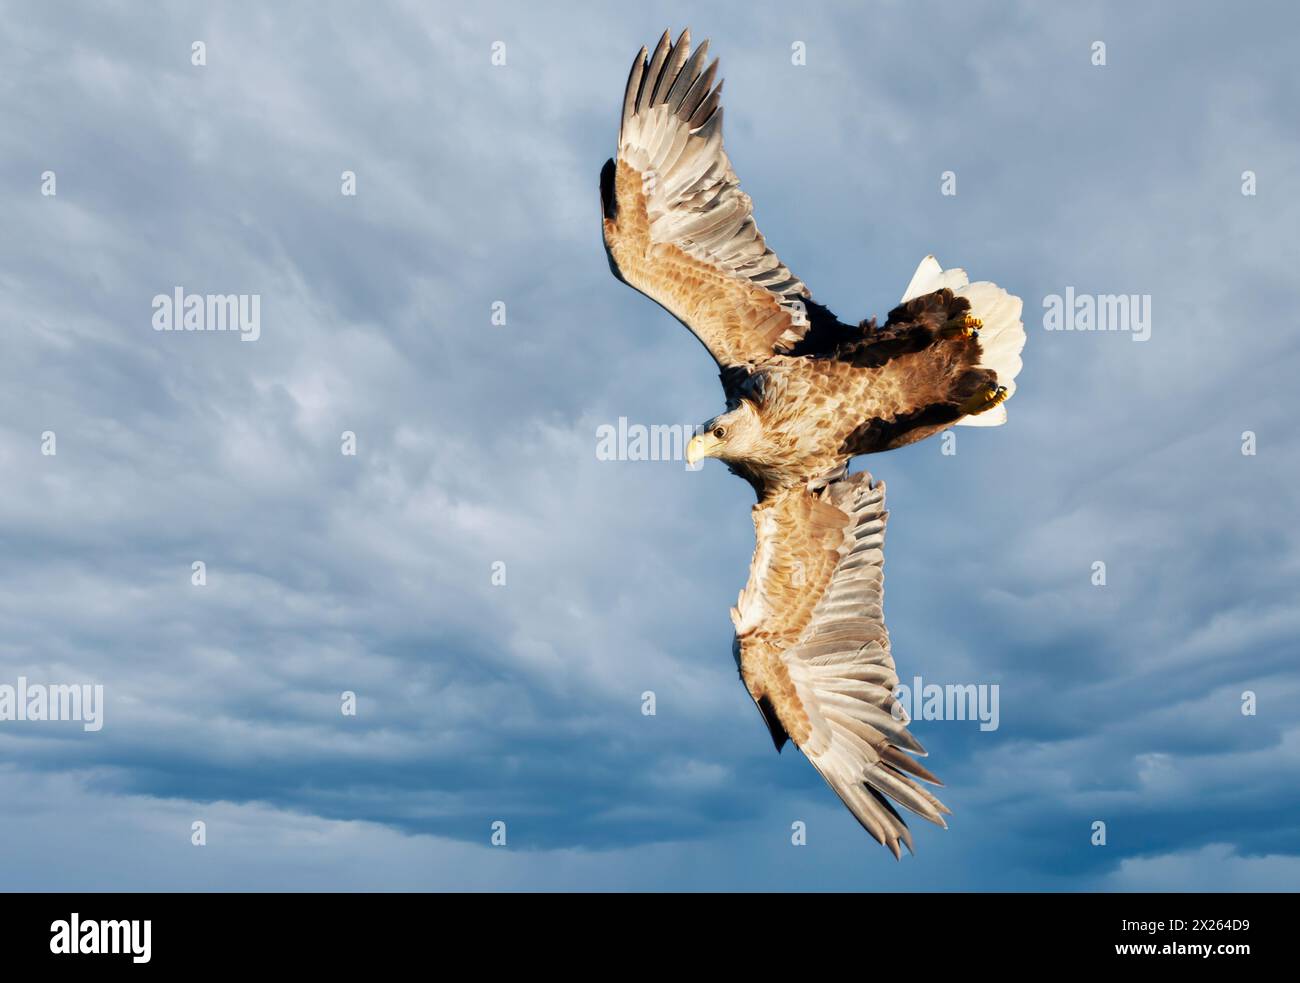 Primo piano di un'aquila marina dalla coda bianca in volo contro il cielo nuvoloso Foto Stock